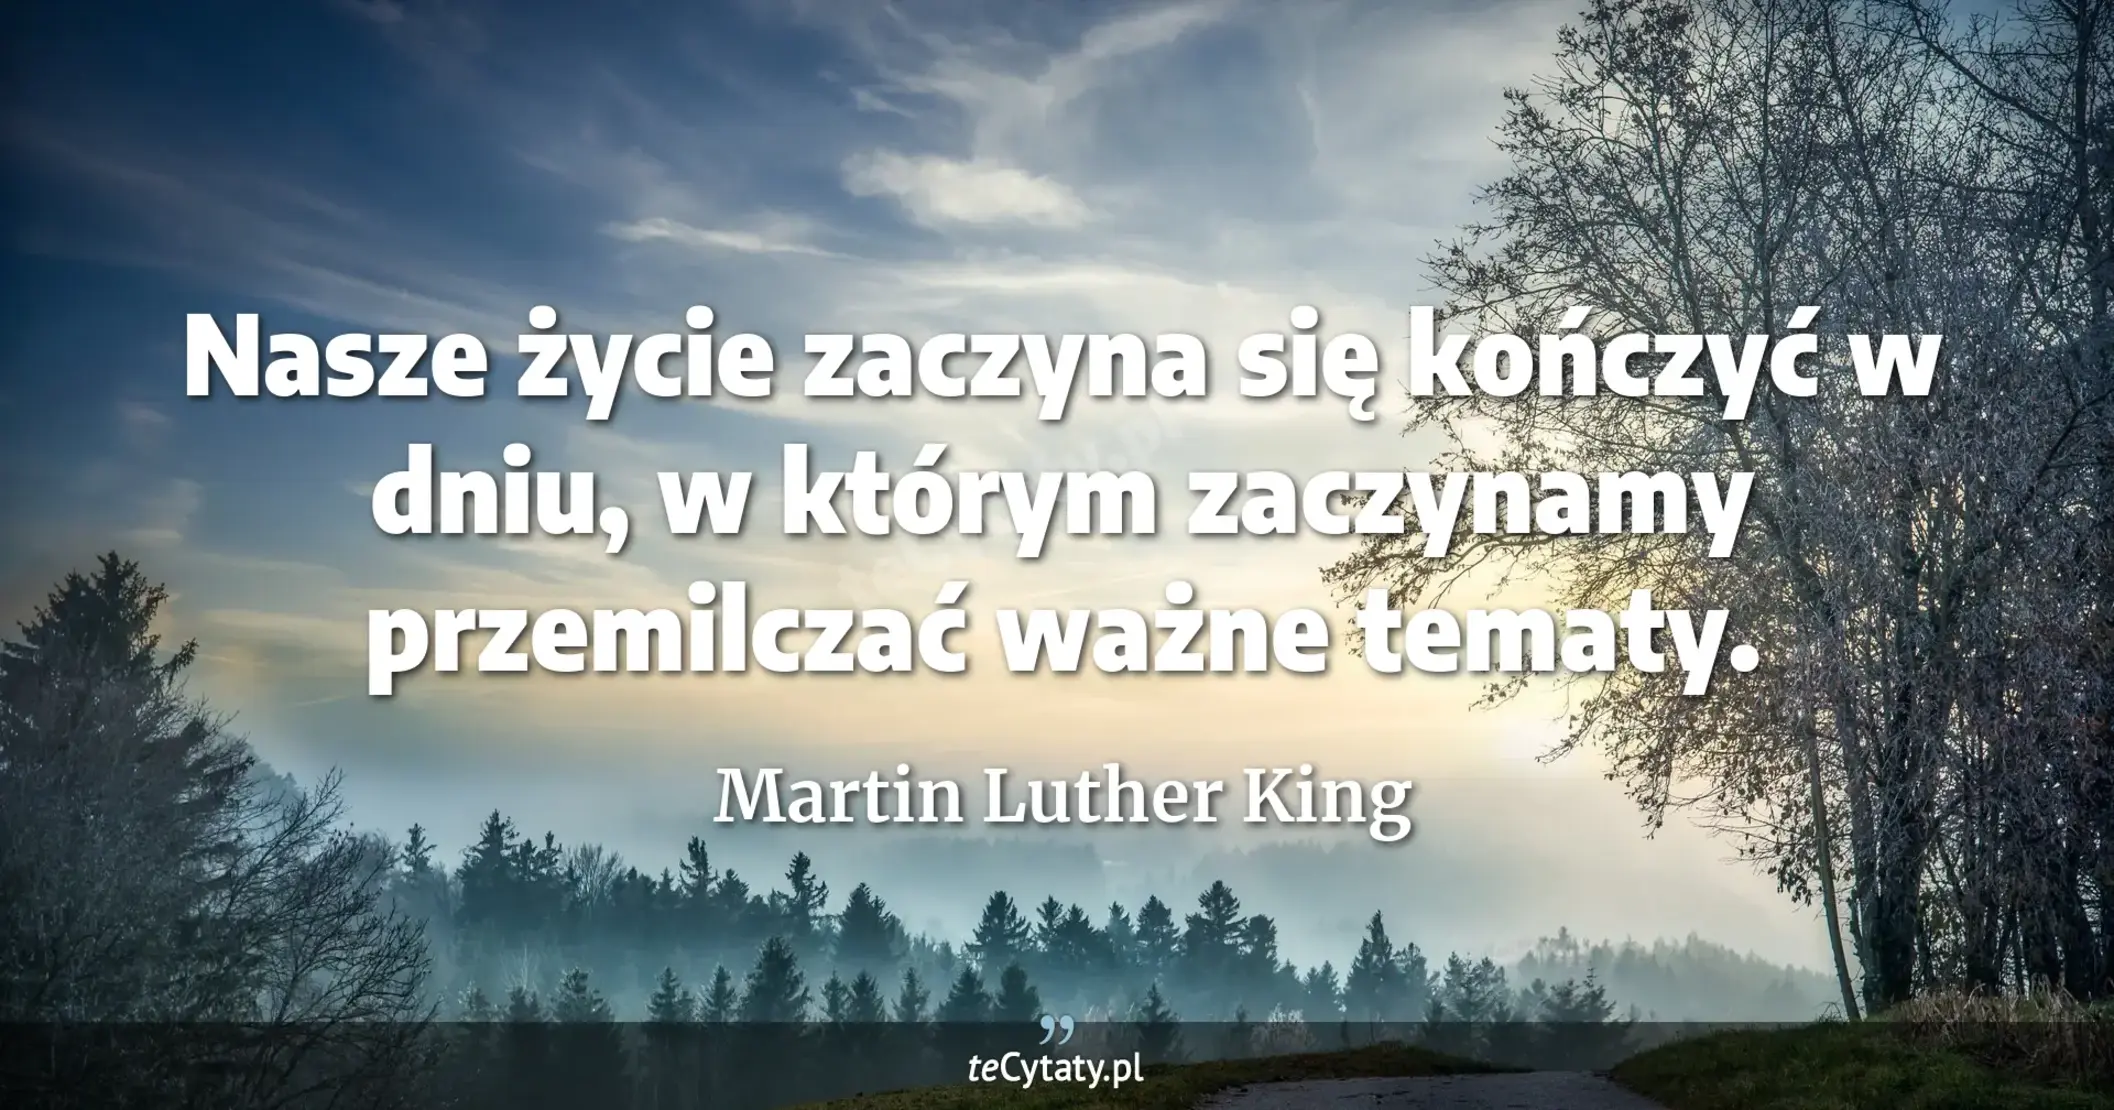 Nasze życie zaczyna się kończyć w dniu, w którym zaczynamy przemilczać ważne tematy. - Martin Luther King